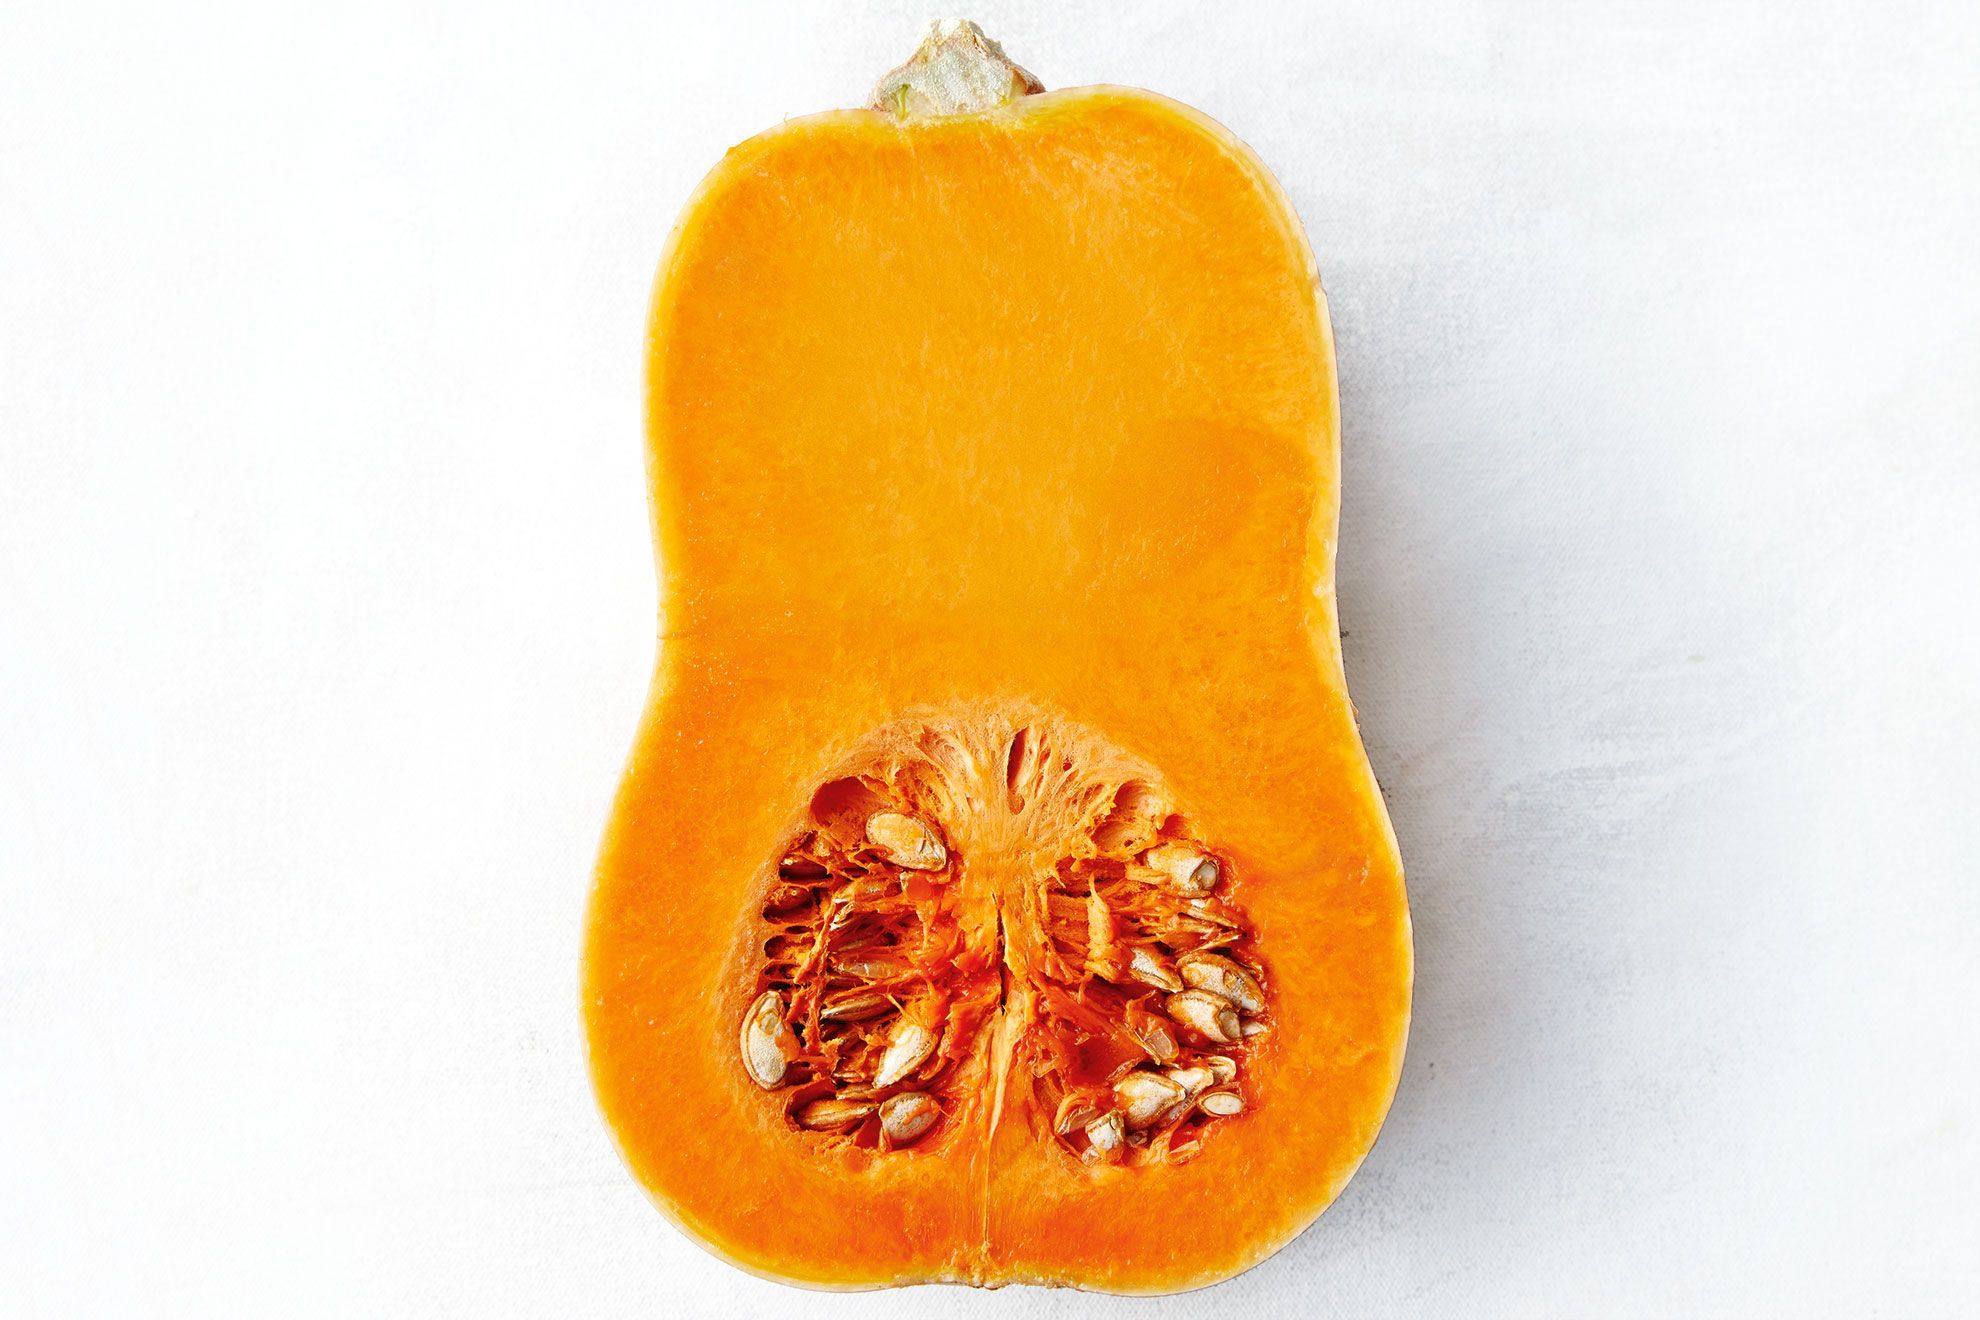 18 Facts About Butternut Pumpkin - Facts.net